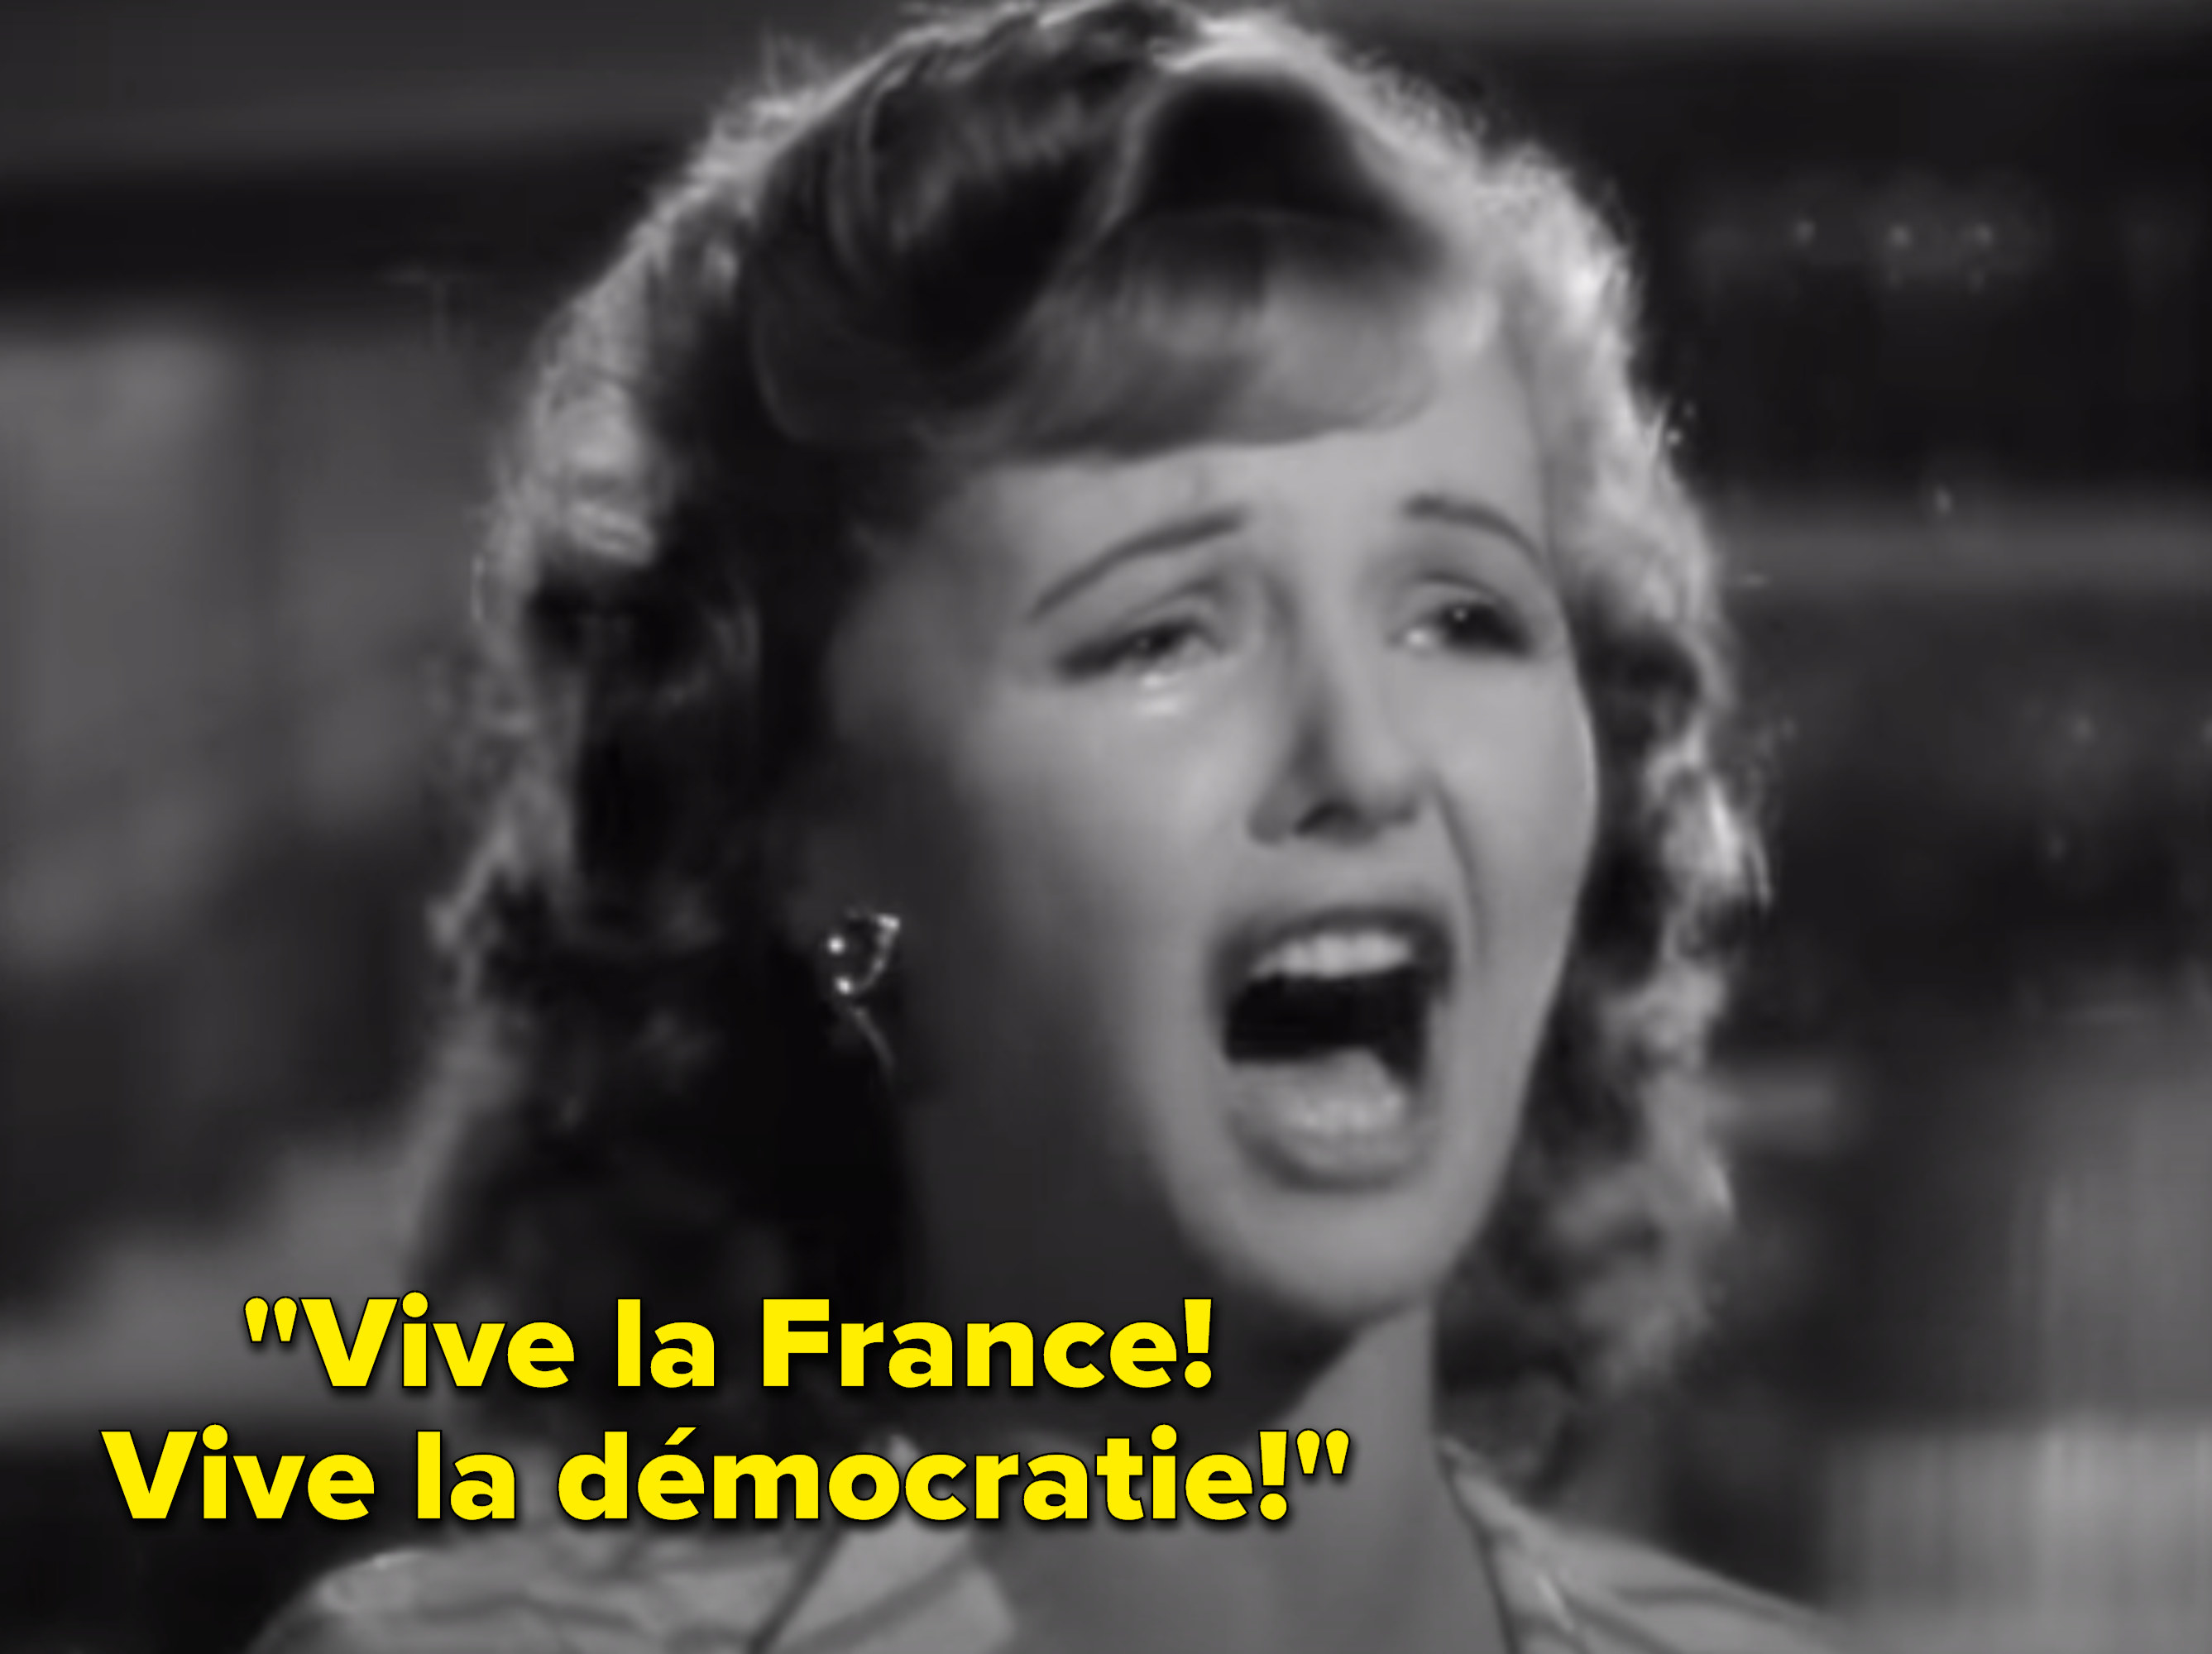 Crying woman singing, &quot;Vive la France! Vive la démocratie!&quot;